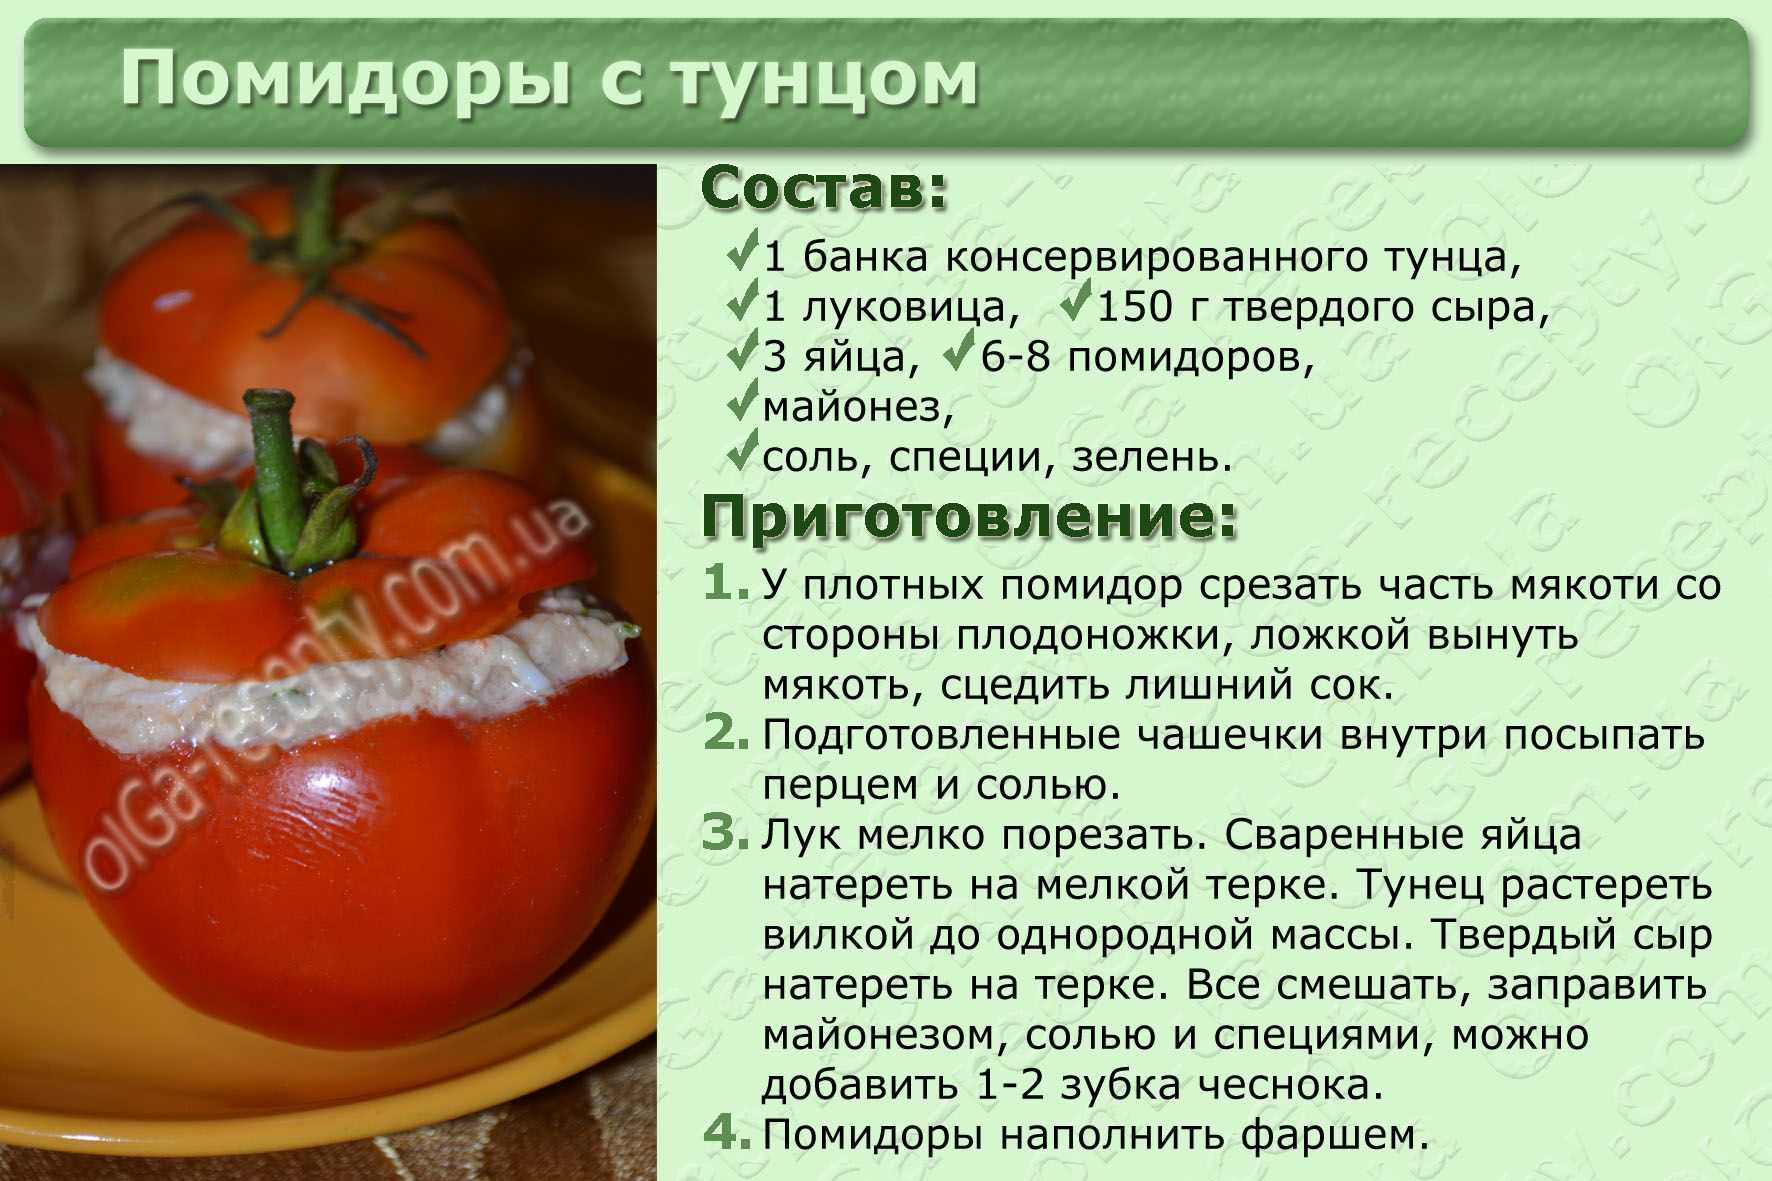 Как правильно приготовить помидоры. Рецепты в картинках с описанием. Рецепты блюд в картинках с описанием. Рецепт здорового блюда. Блюда из овощей с описанием.